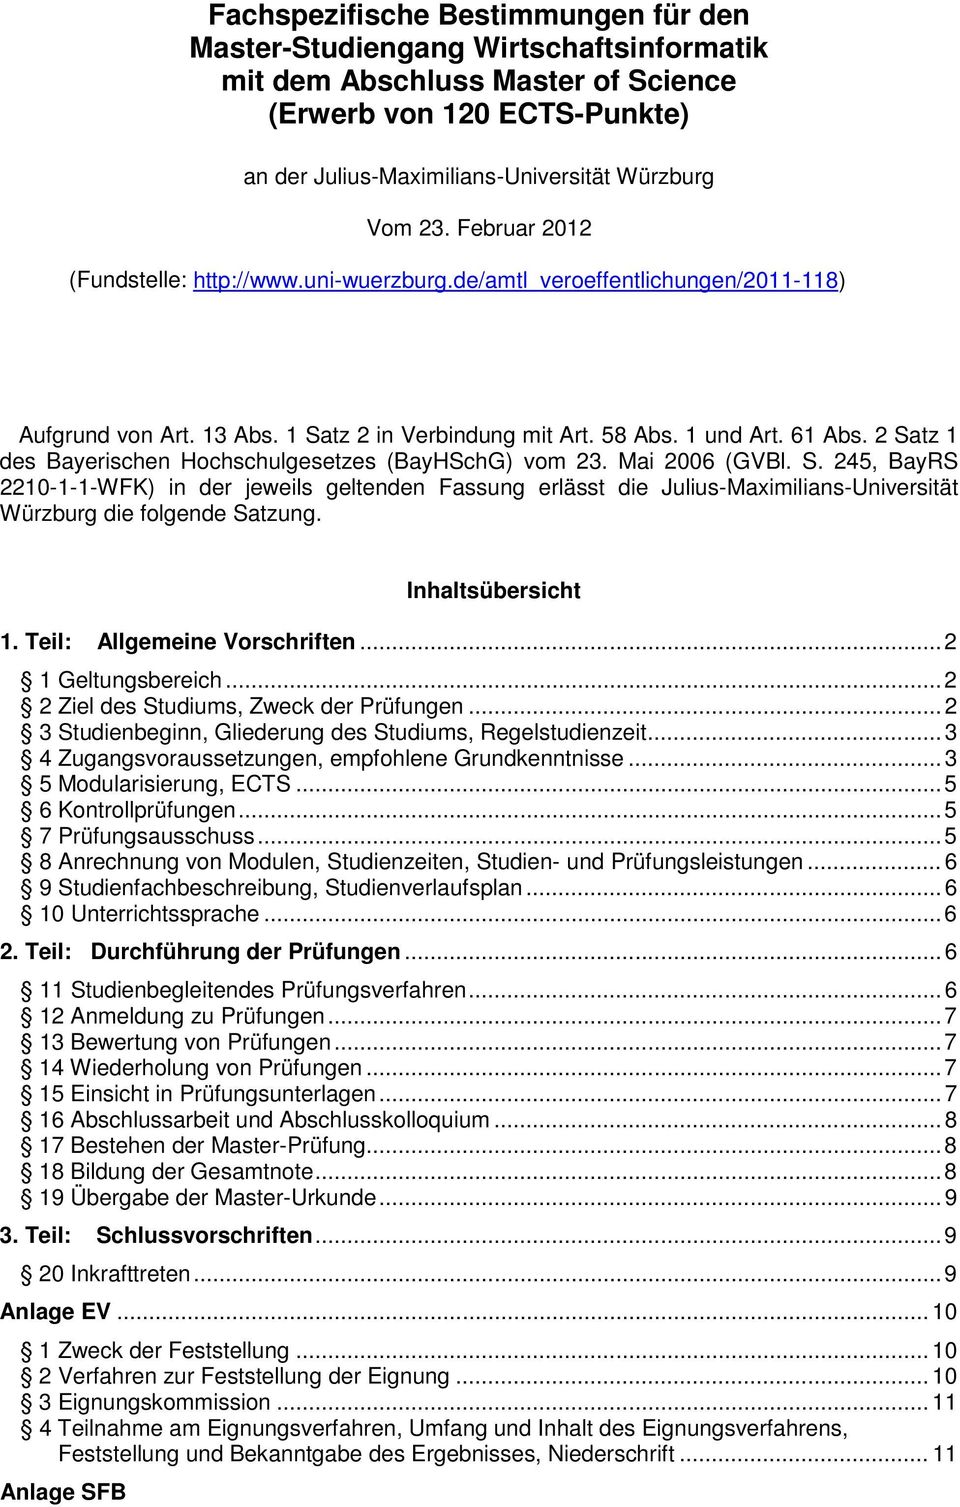 2 Satz 1 des Bayerischen Hochschulgesetzes (BayHSchG) vom 23. Mai 2006 (GVBl. S. 245, BayRS 2210-1-1-WFK) in der jeweils geltenden Fassung erlässt die Julius-Maximilians-Universität Würzburg die folgende Satzung.